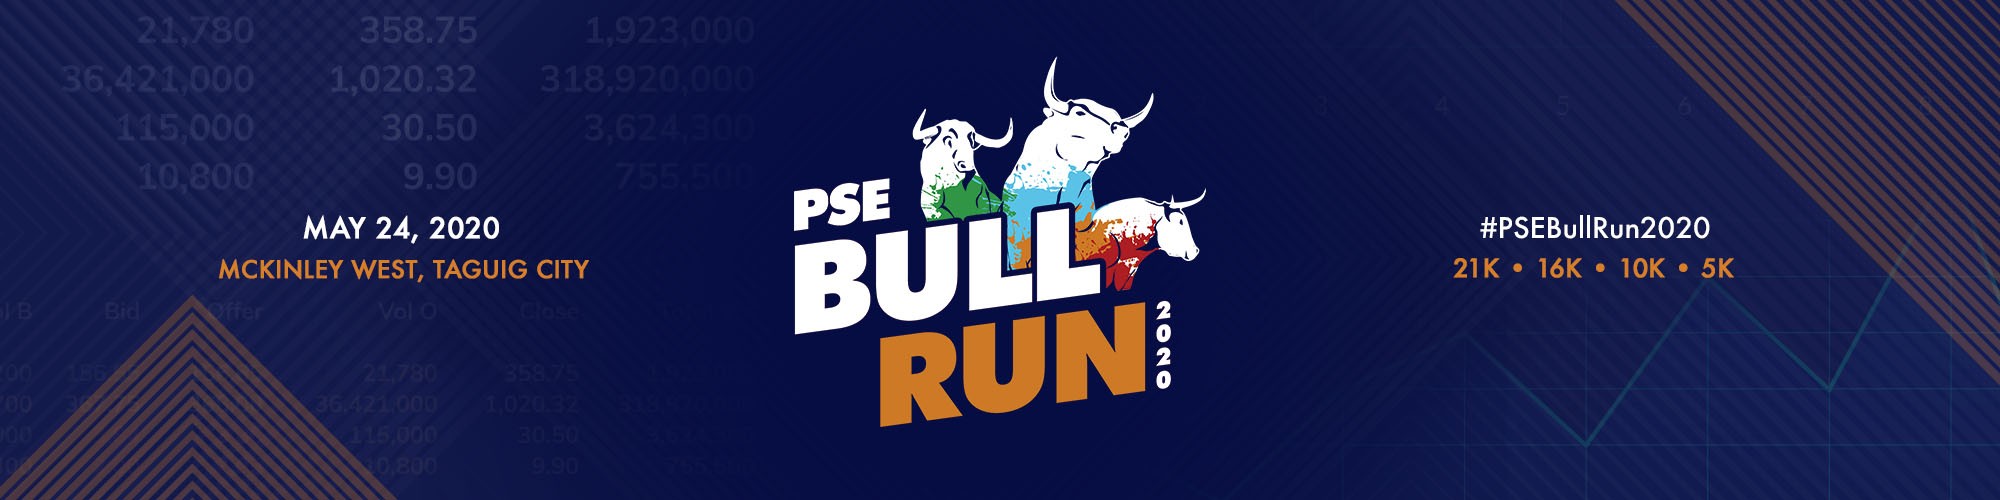 PSE Bull Run 2020